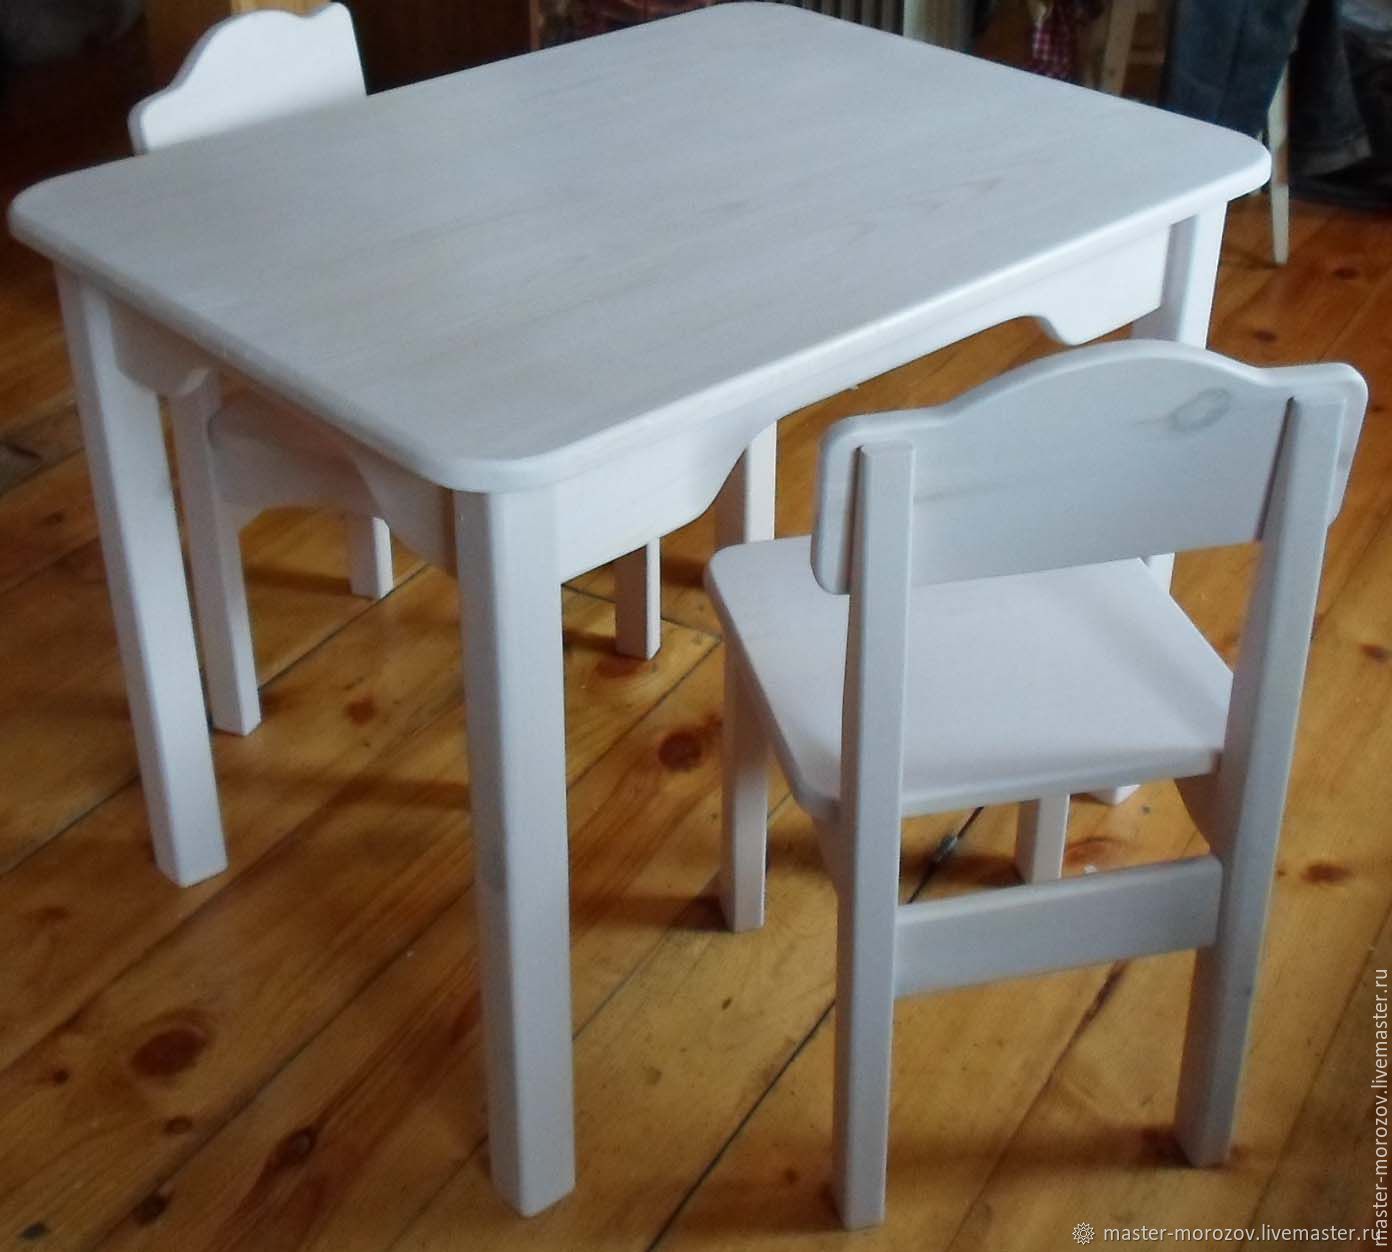 Кухонные столы оренбург. Столы Иркутск. Стол с отдельными ножками. 2д стол и стулья. Кухонный стол с отдельными ножками.